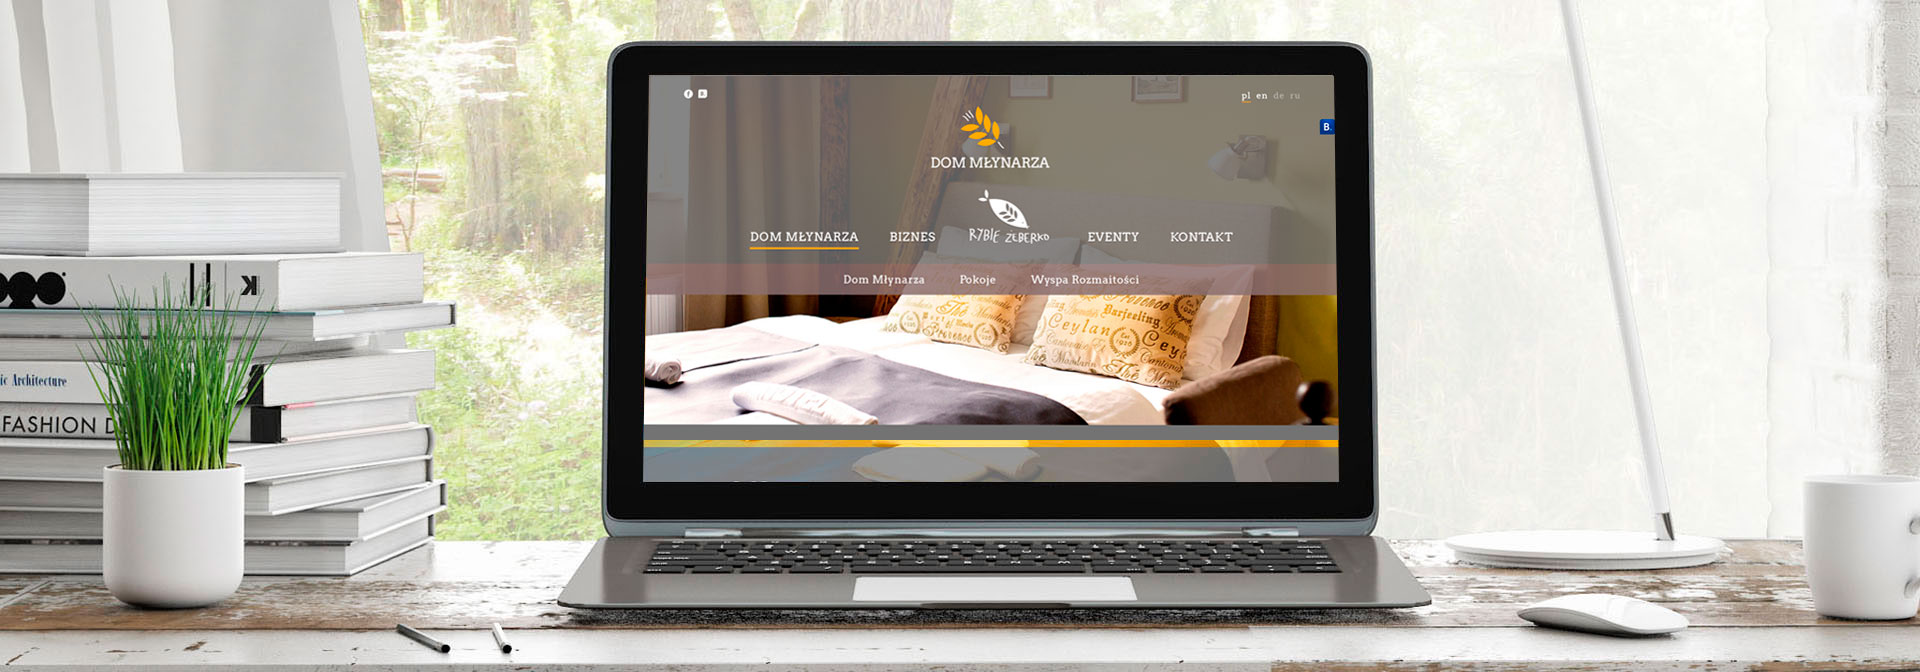 Visualização do início website do Hotel Dom Młynarza